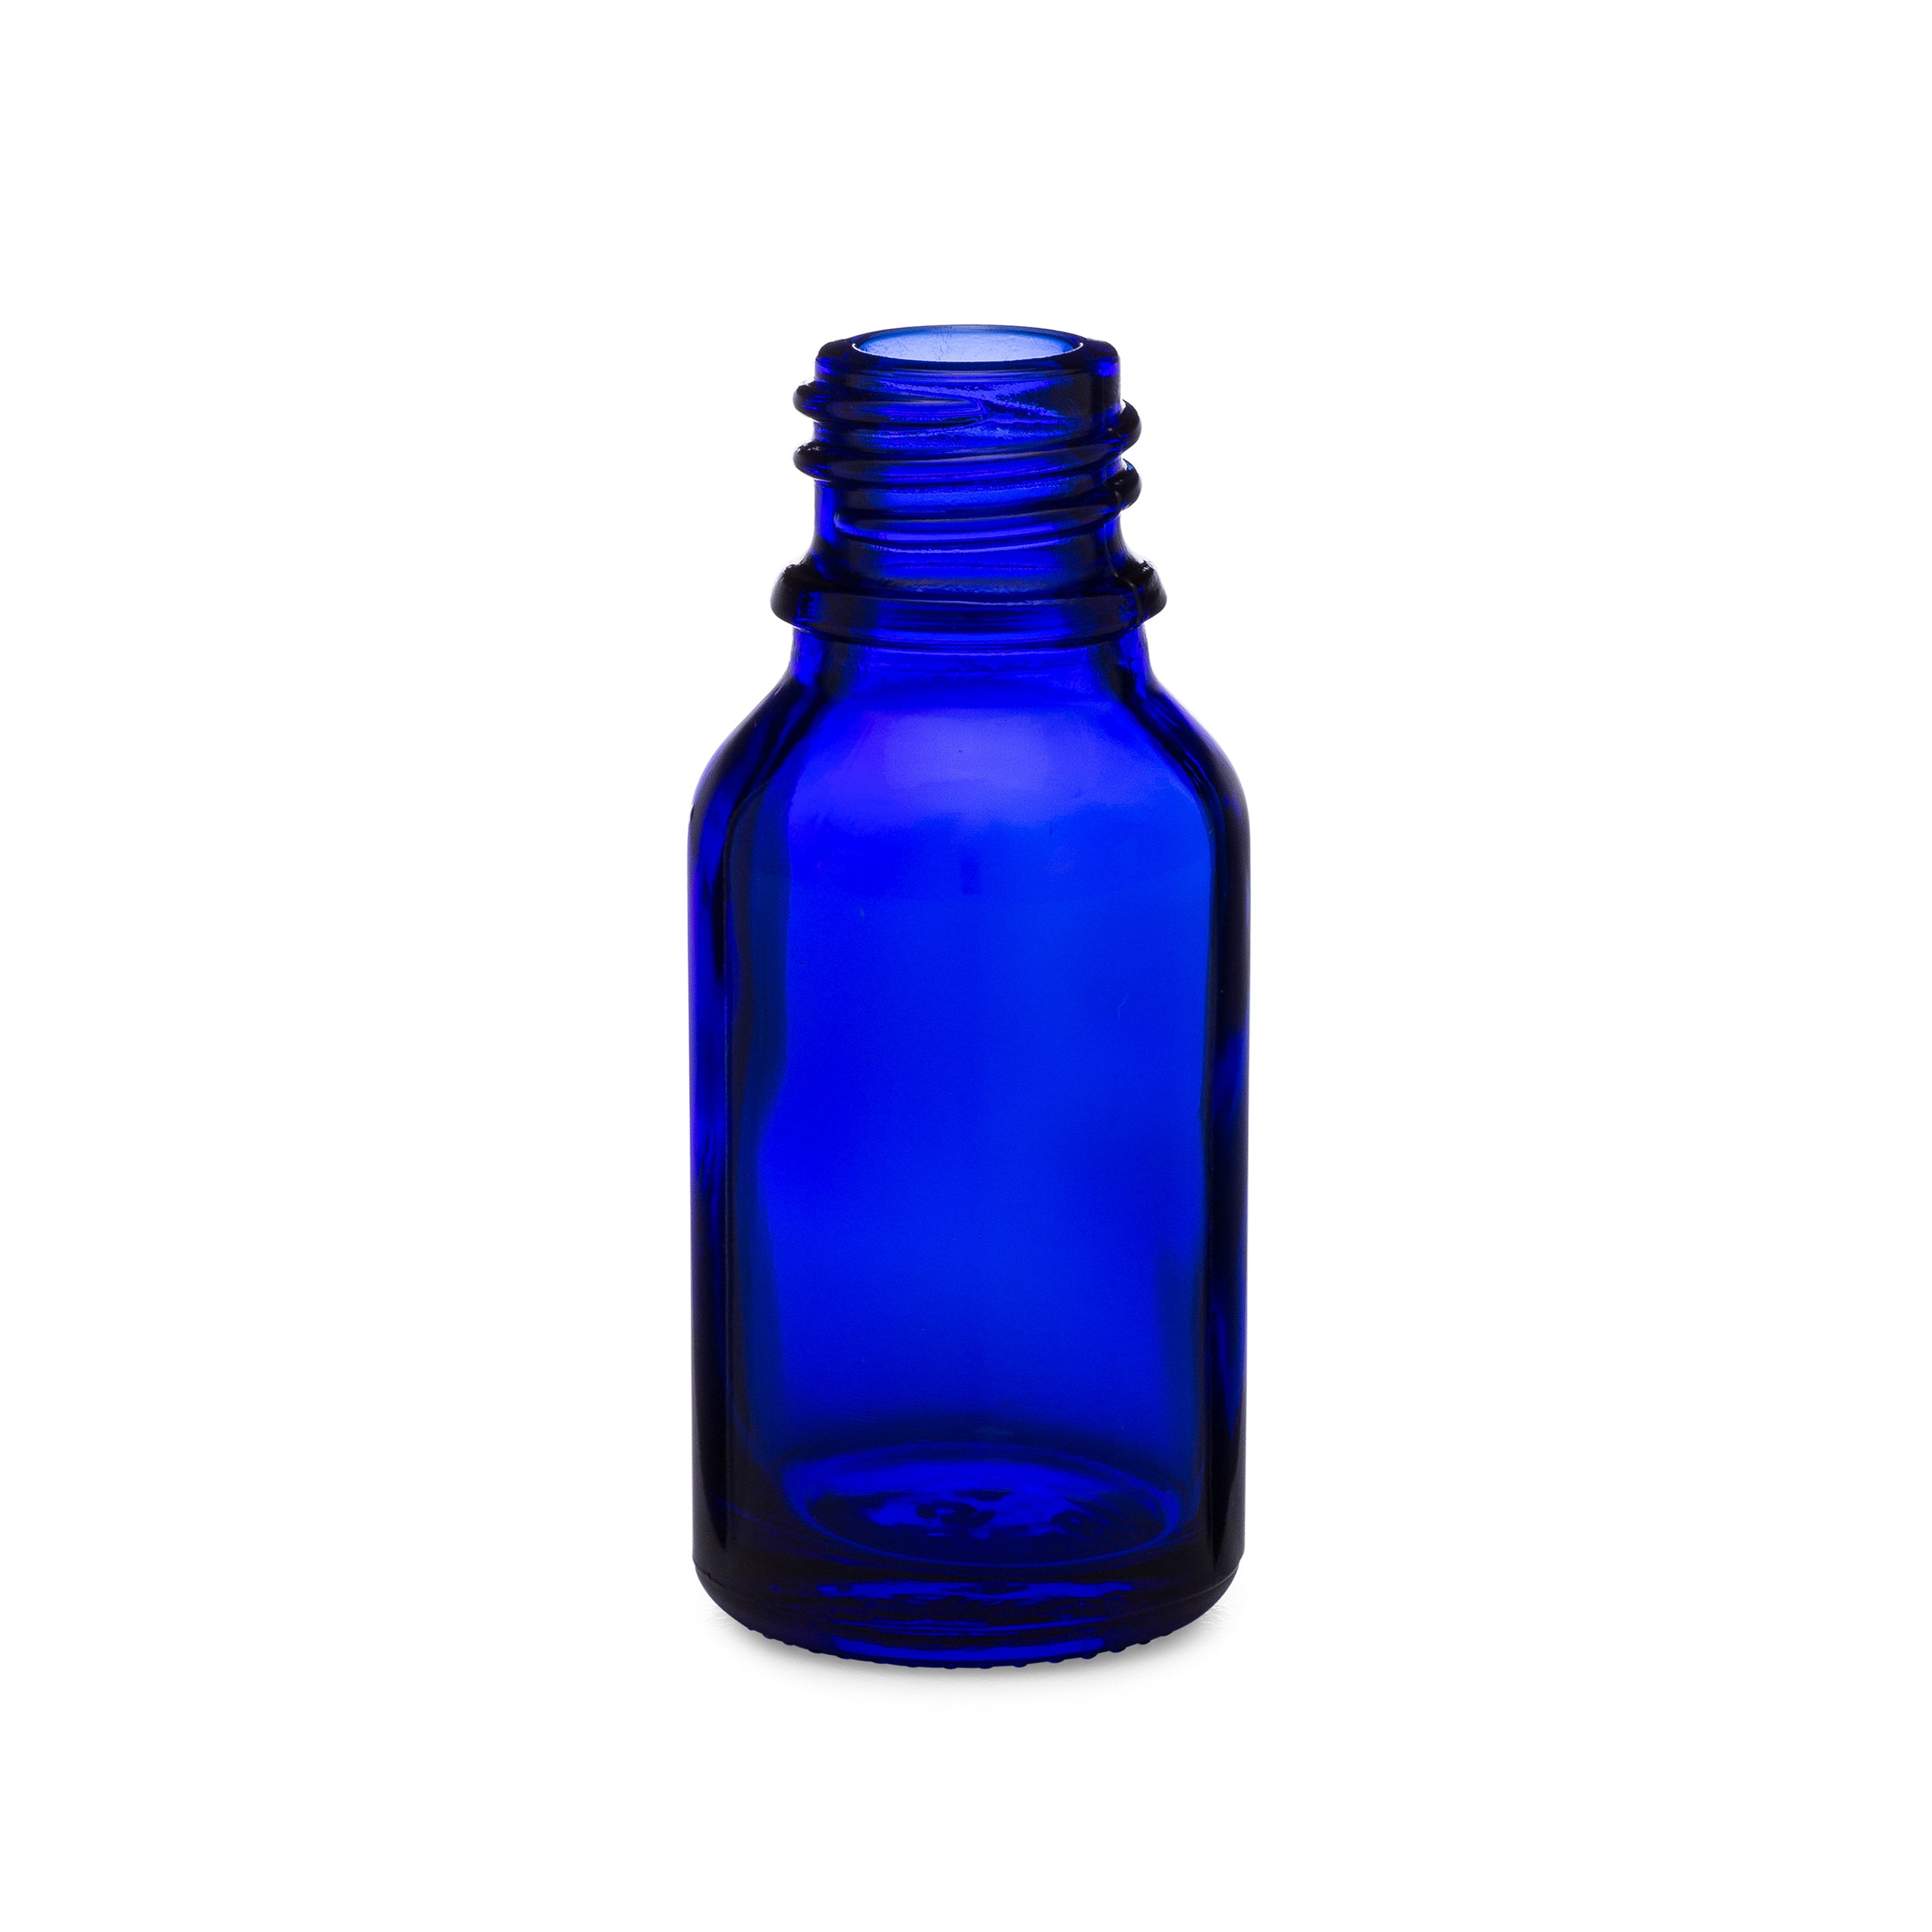 15ml/0.5oz Blue Dropper Bottle